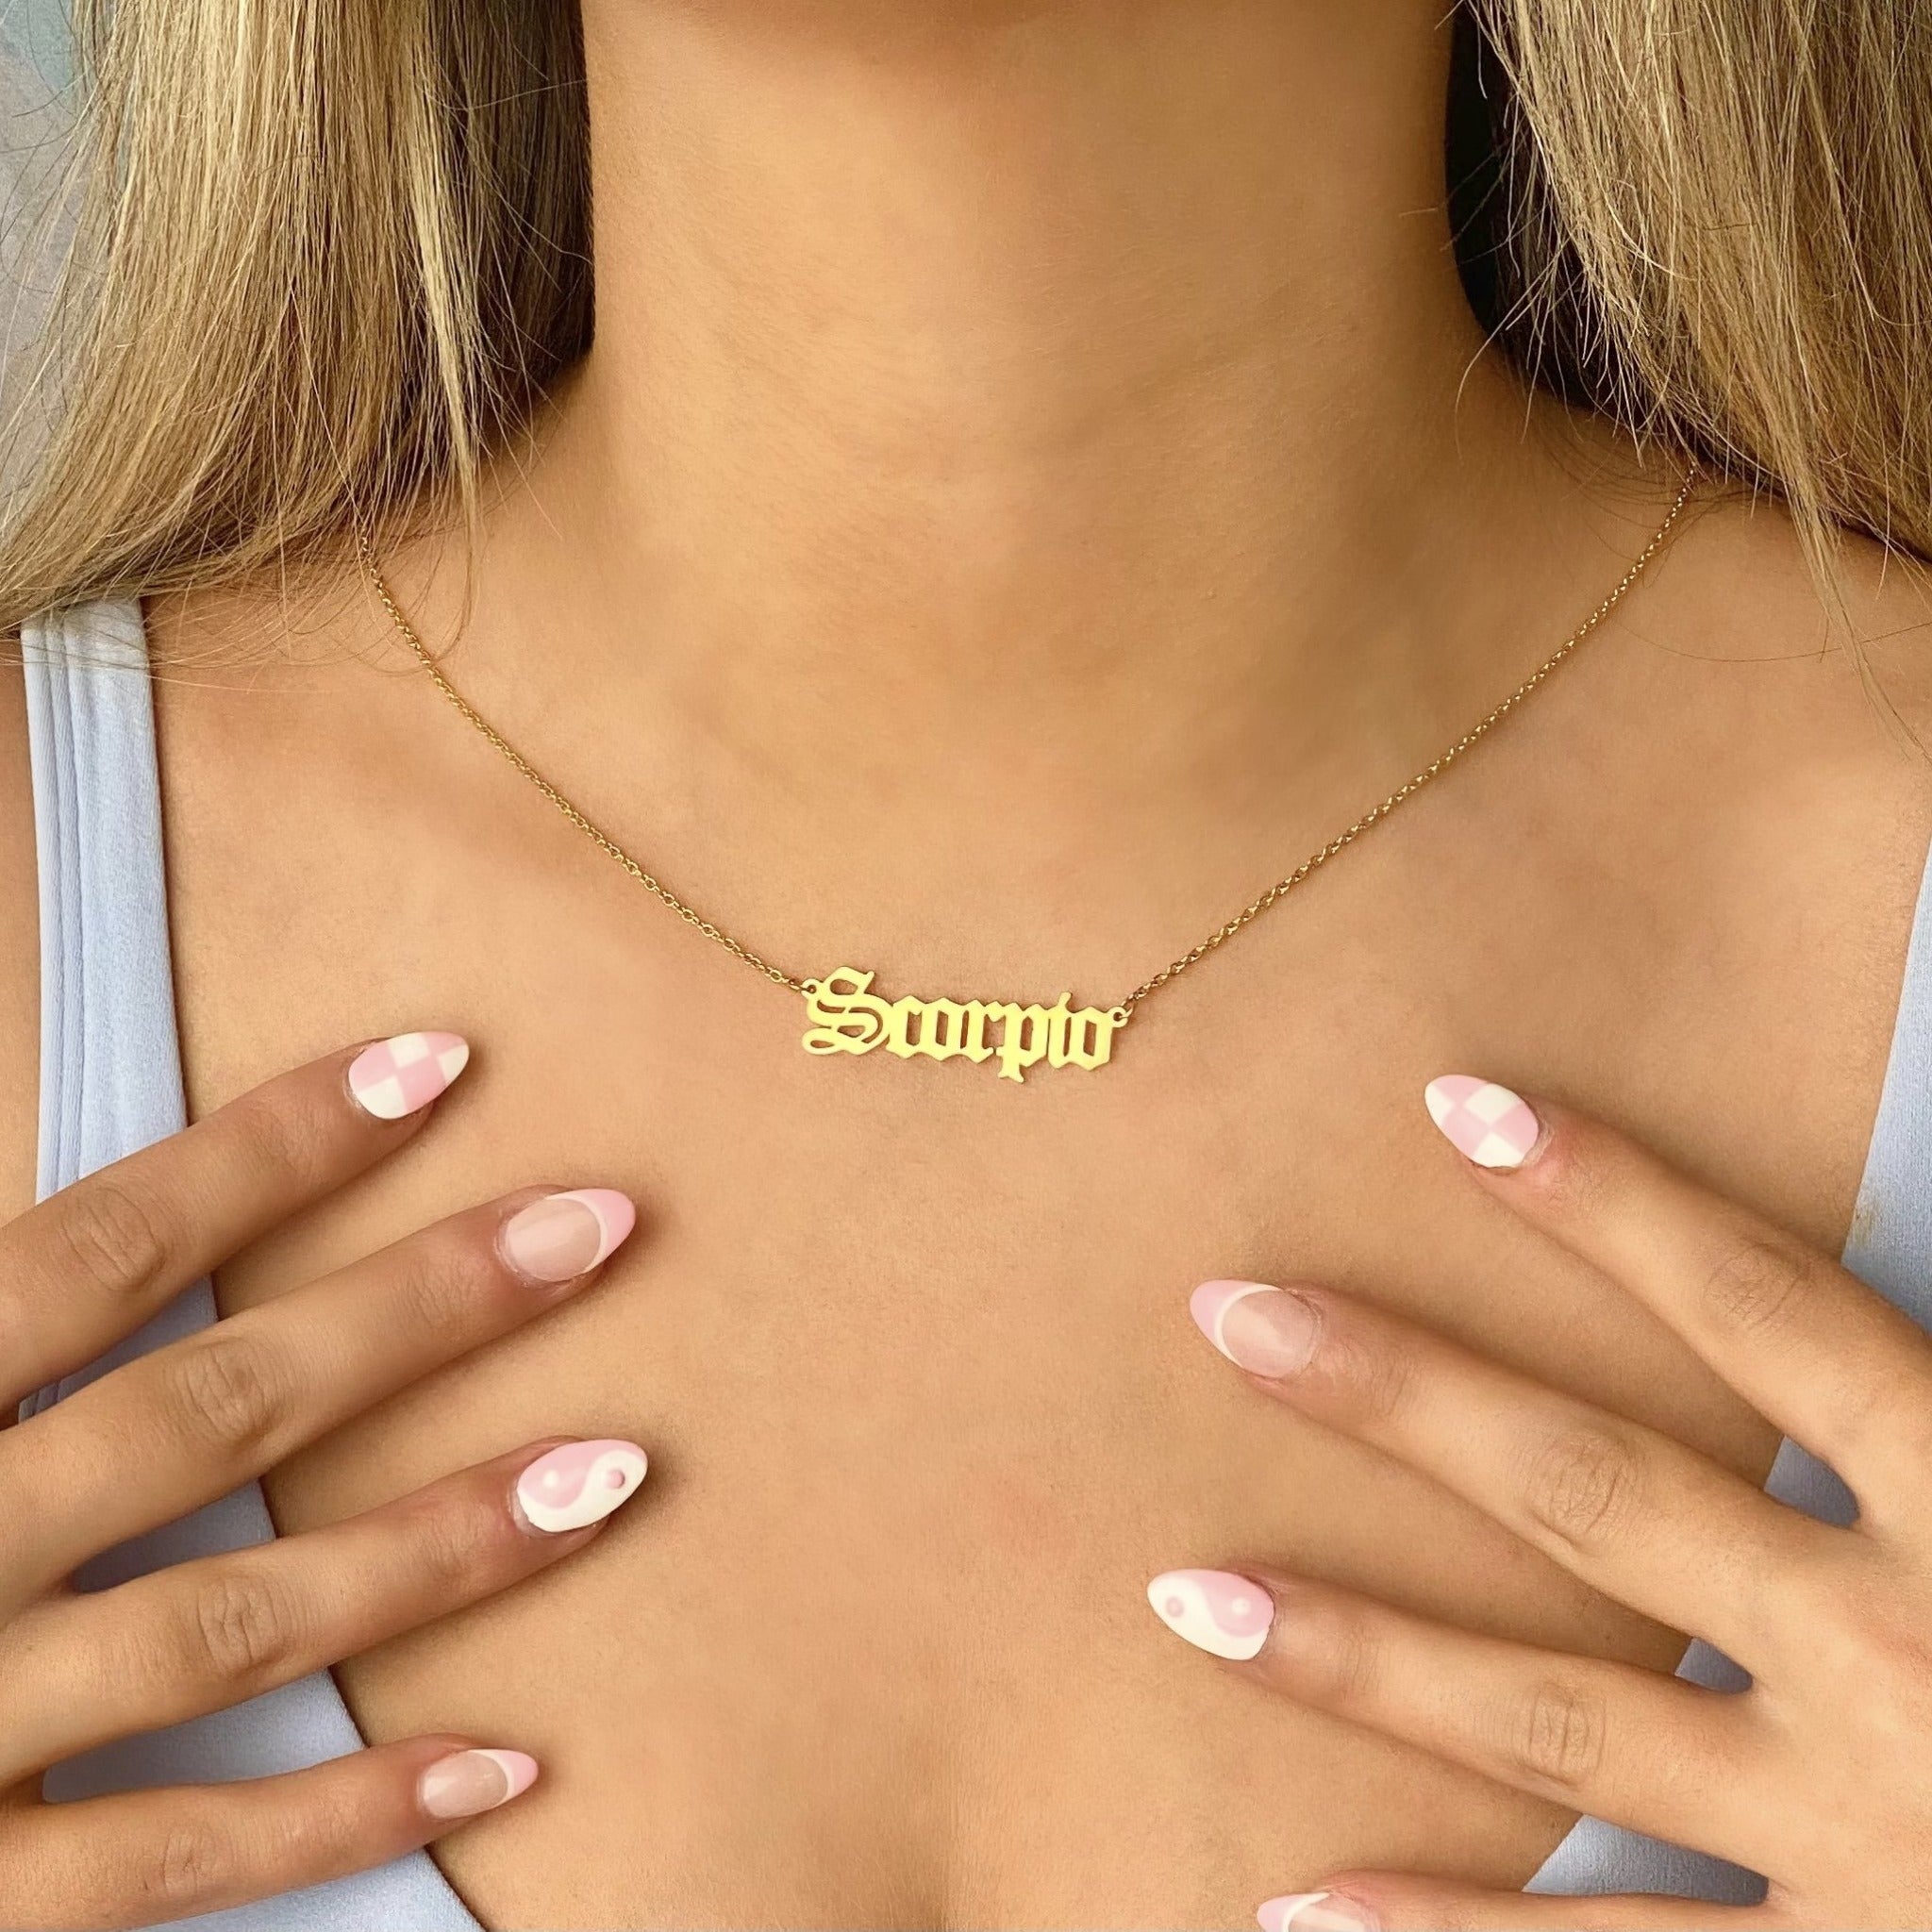 Scorpio Constellation Necklace Sky Blue – Carla De La Cruz Jewelry